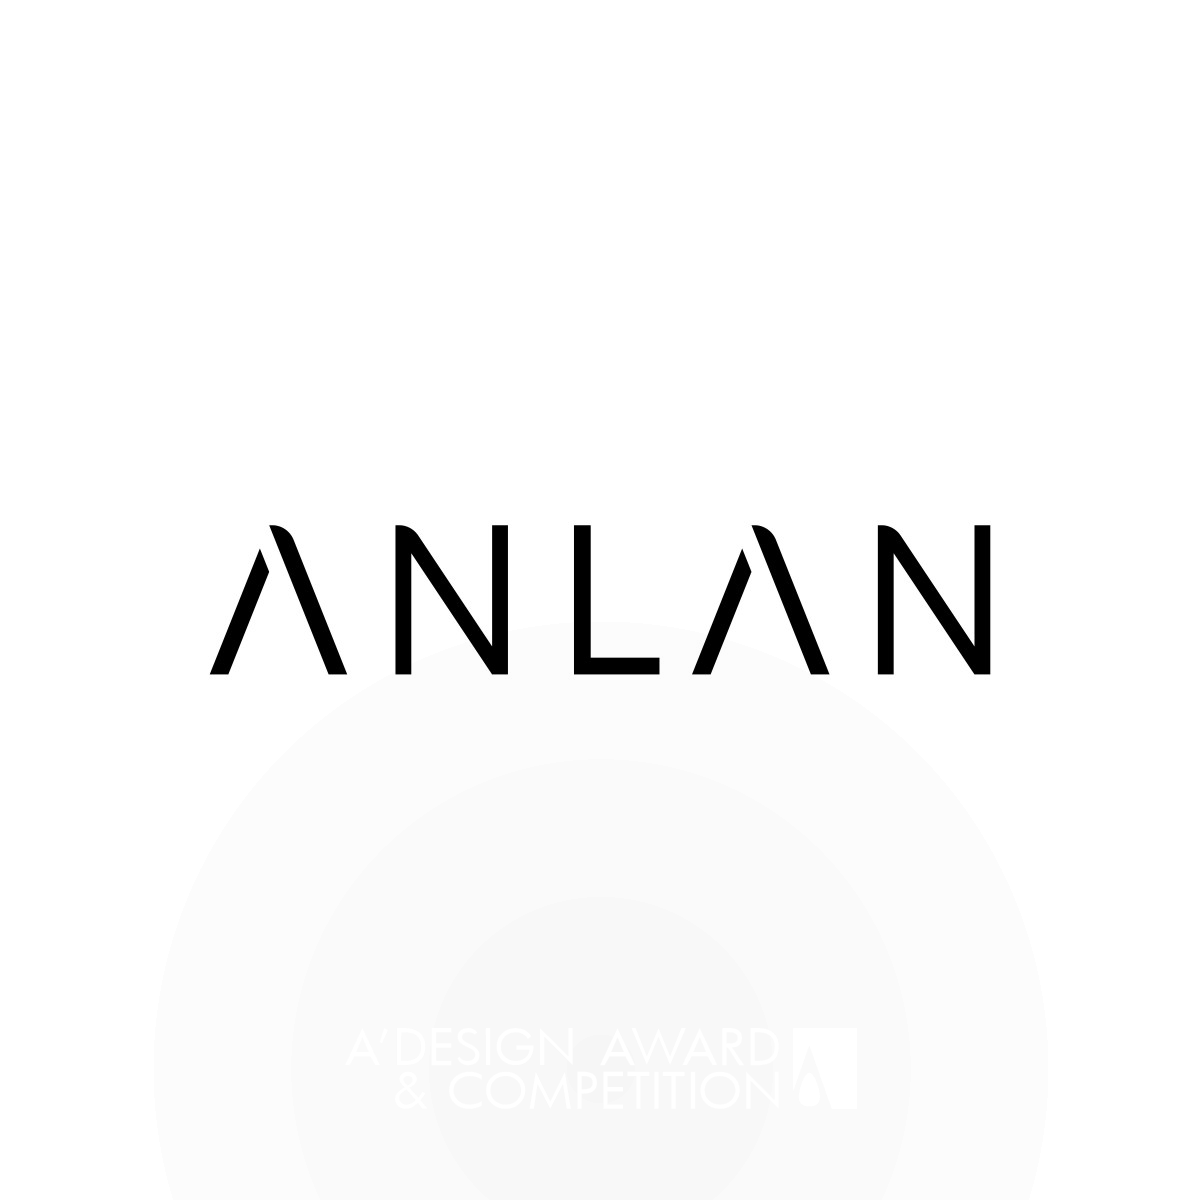 Anlan Branding